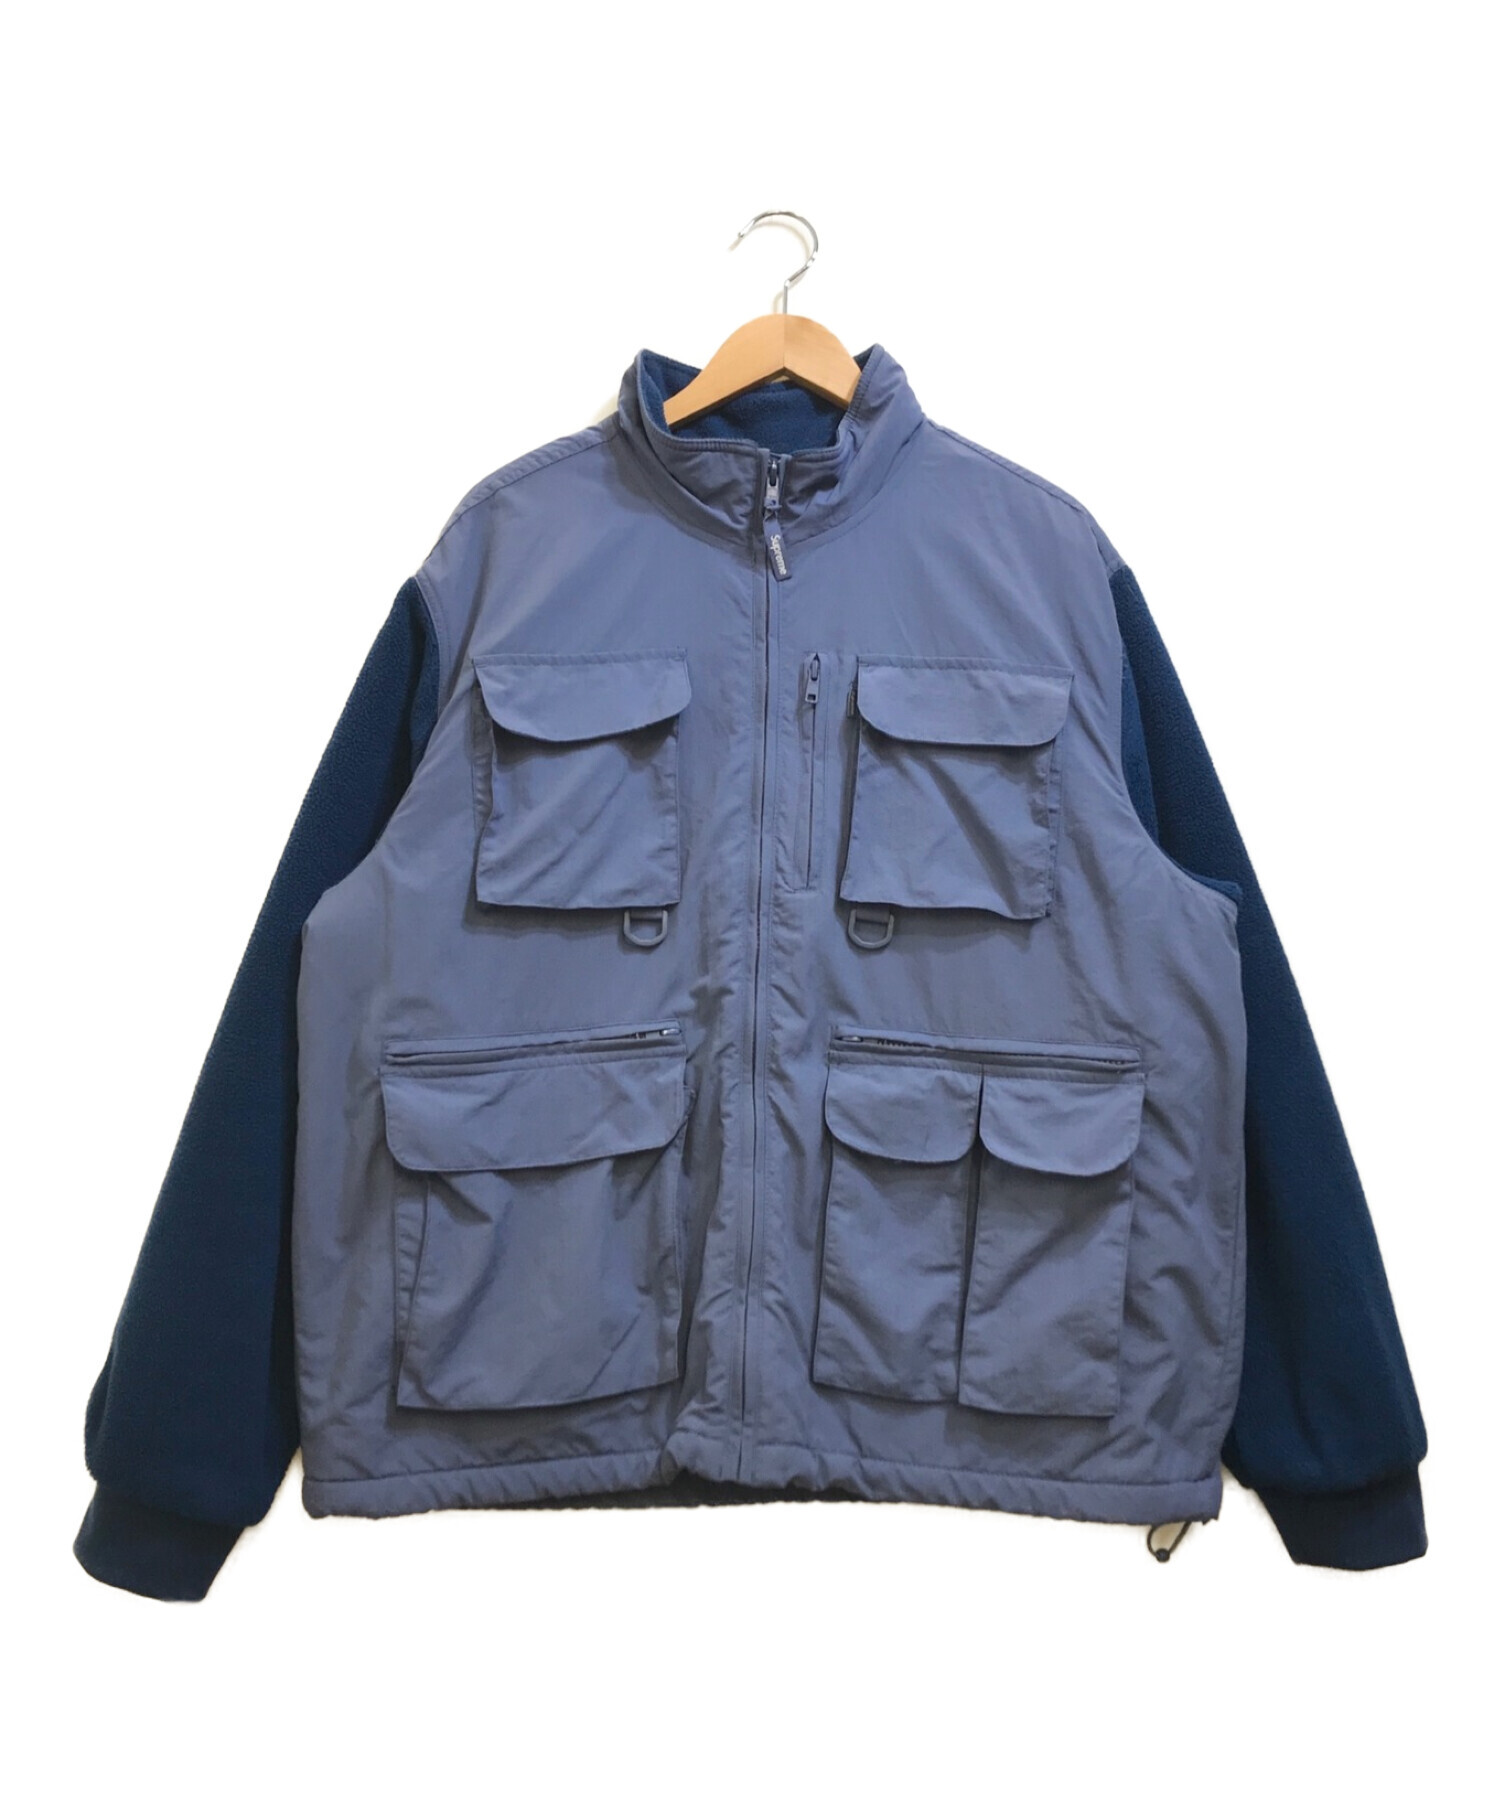 supSupreme Upland fleece Jacket M